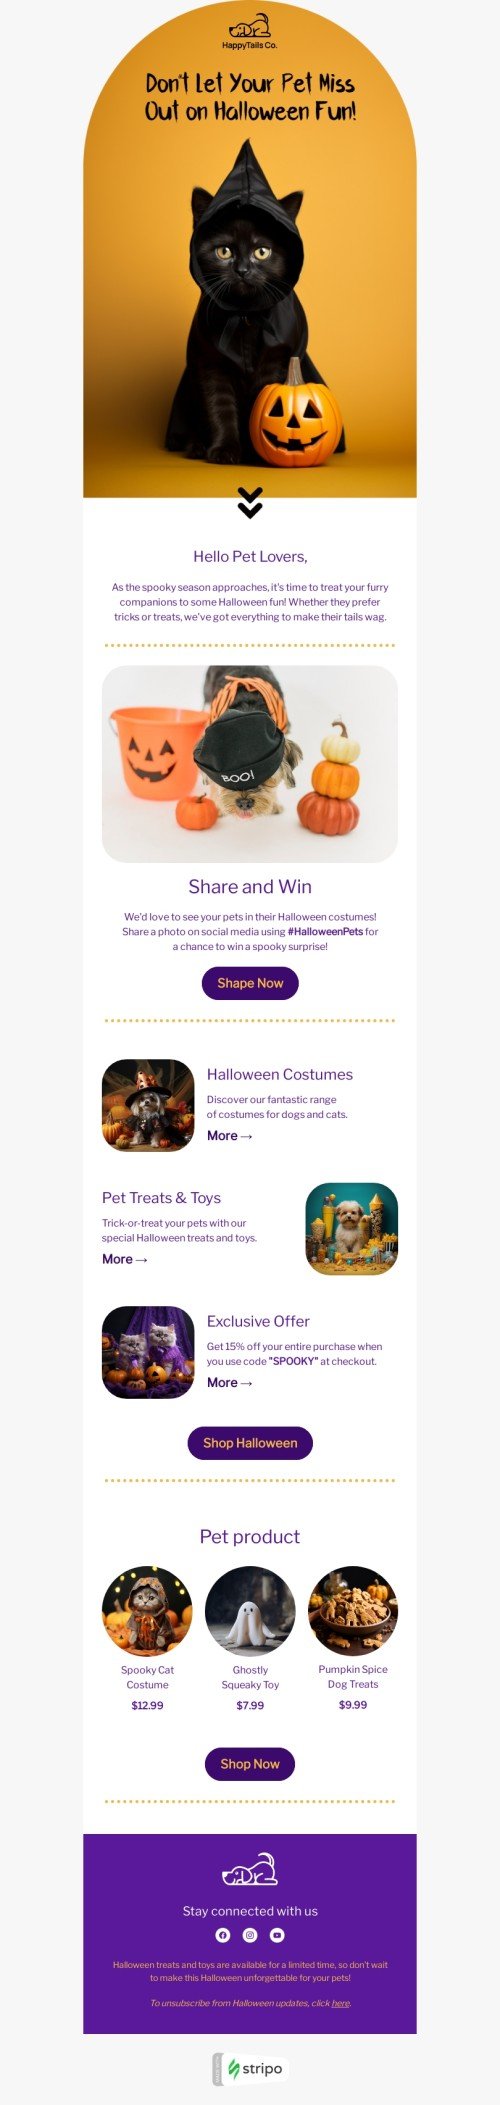 Шаблон письма к празднику Хэллоуин «Привет, владельцам домашних животных!» для индустрии «Животные» мобильный вид